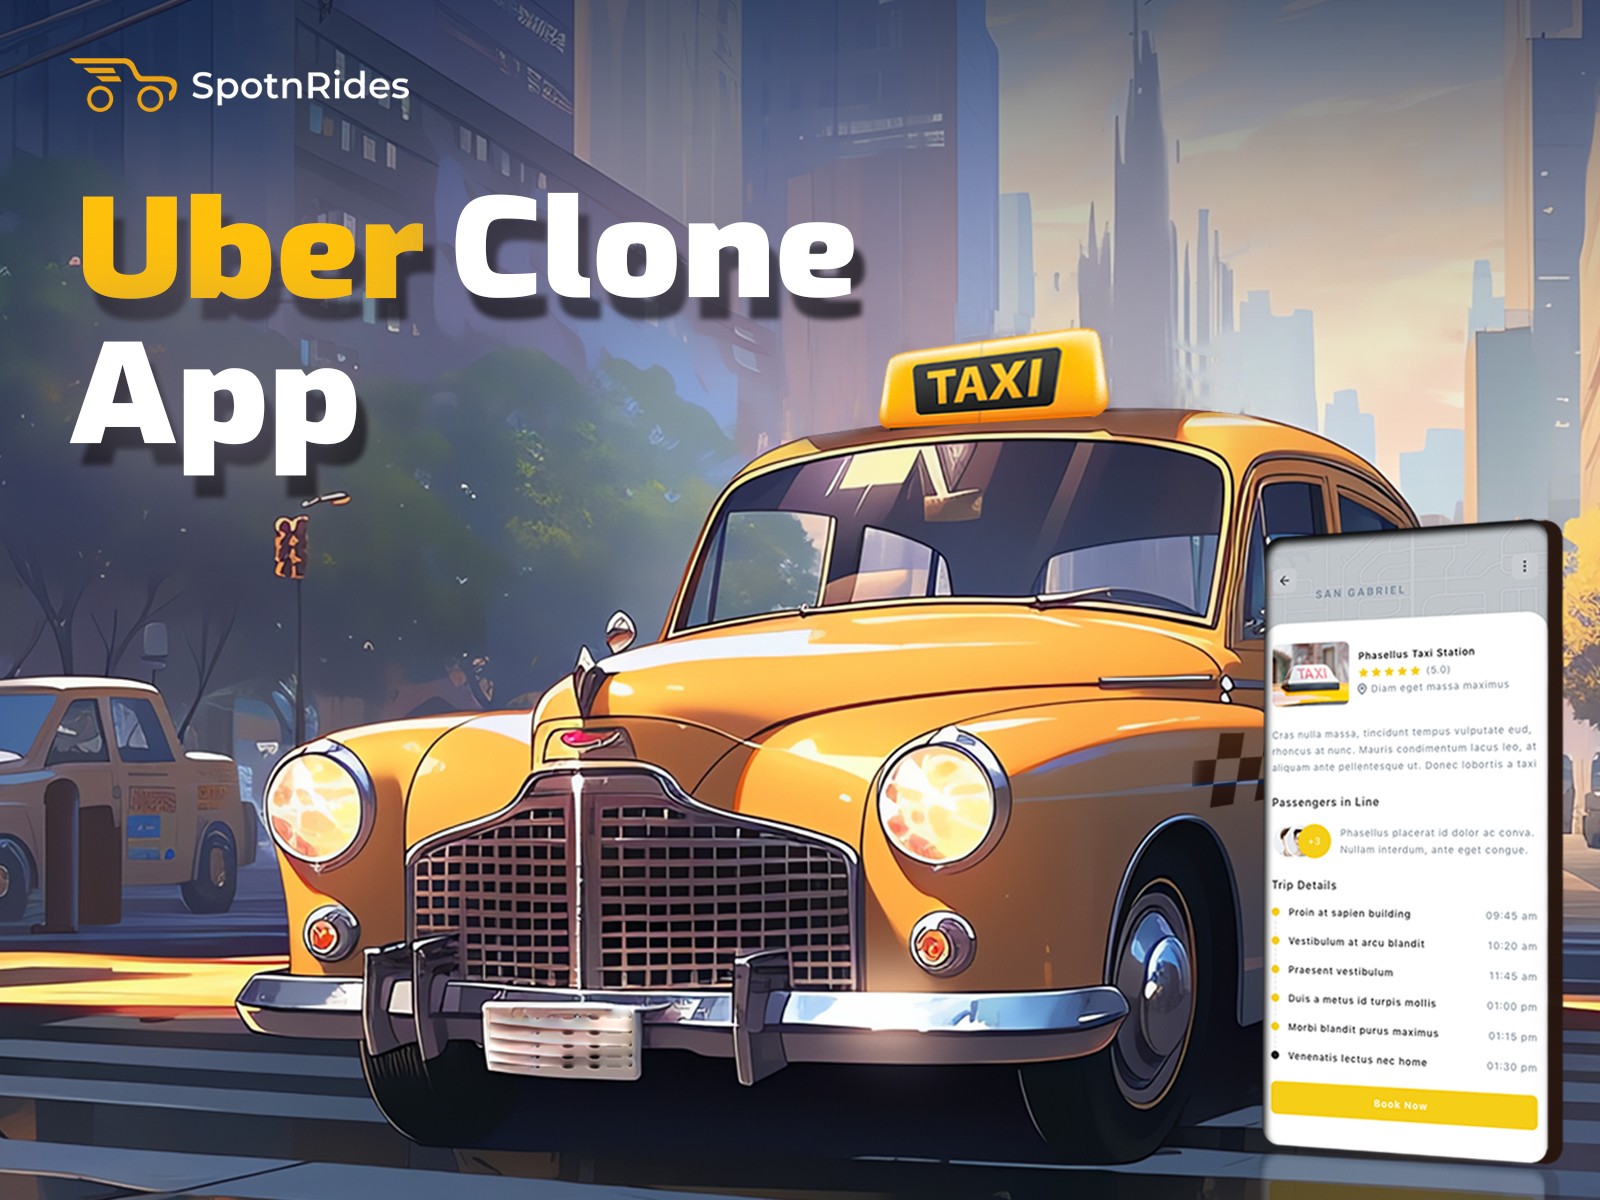  SpotnRides provides Uber-like app development services.